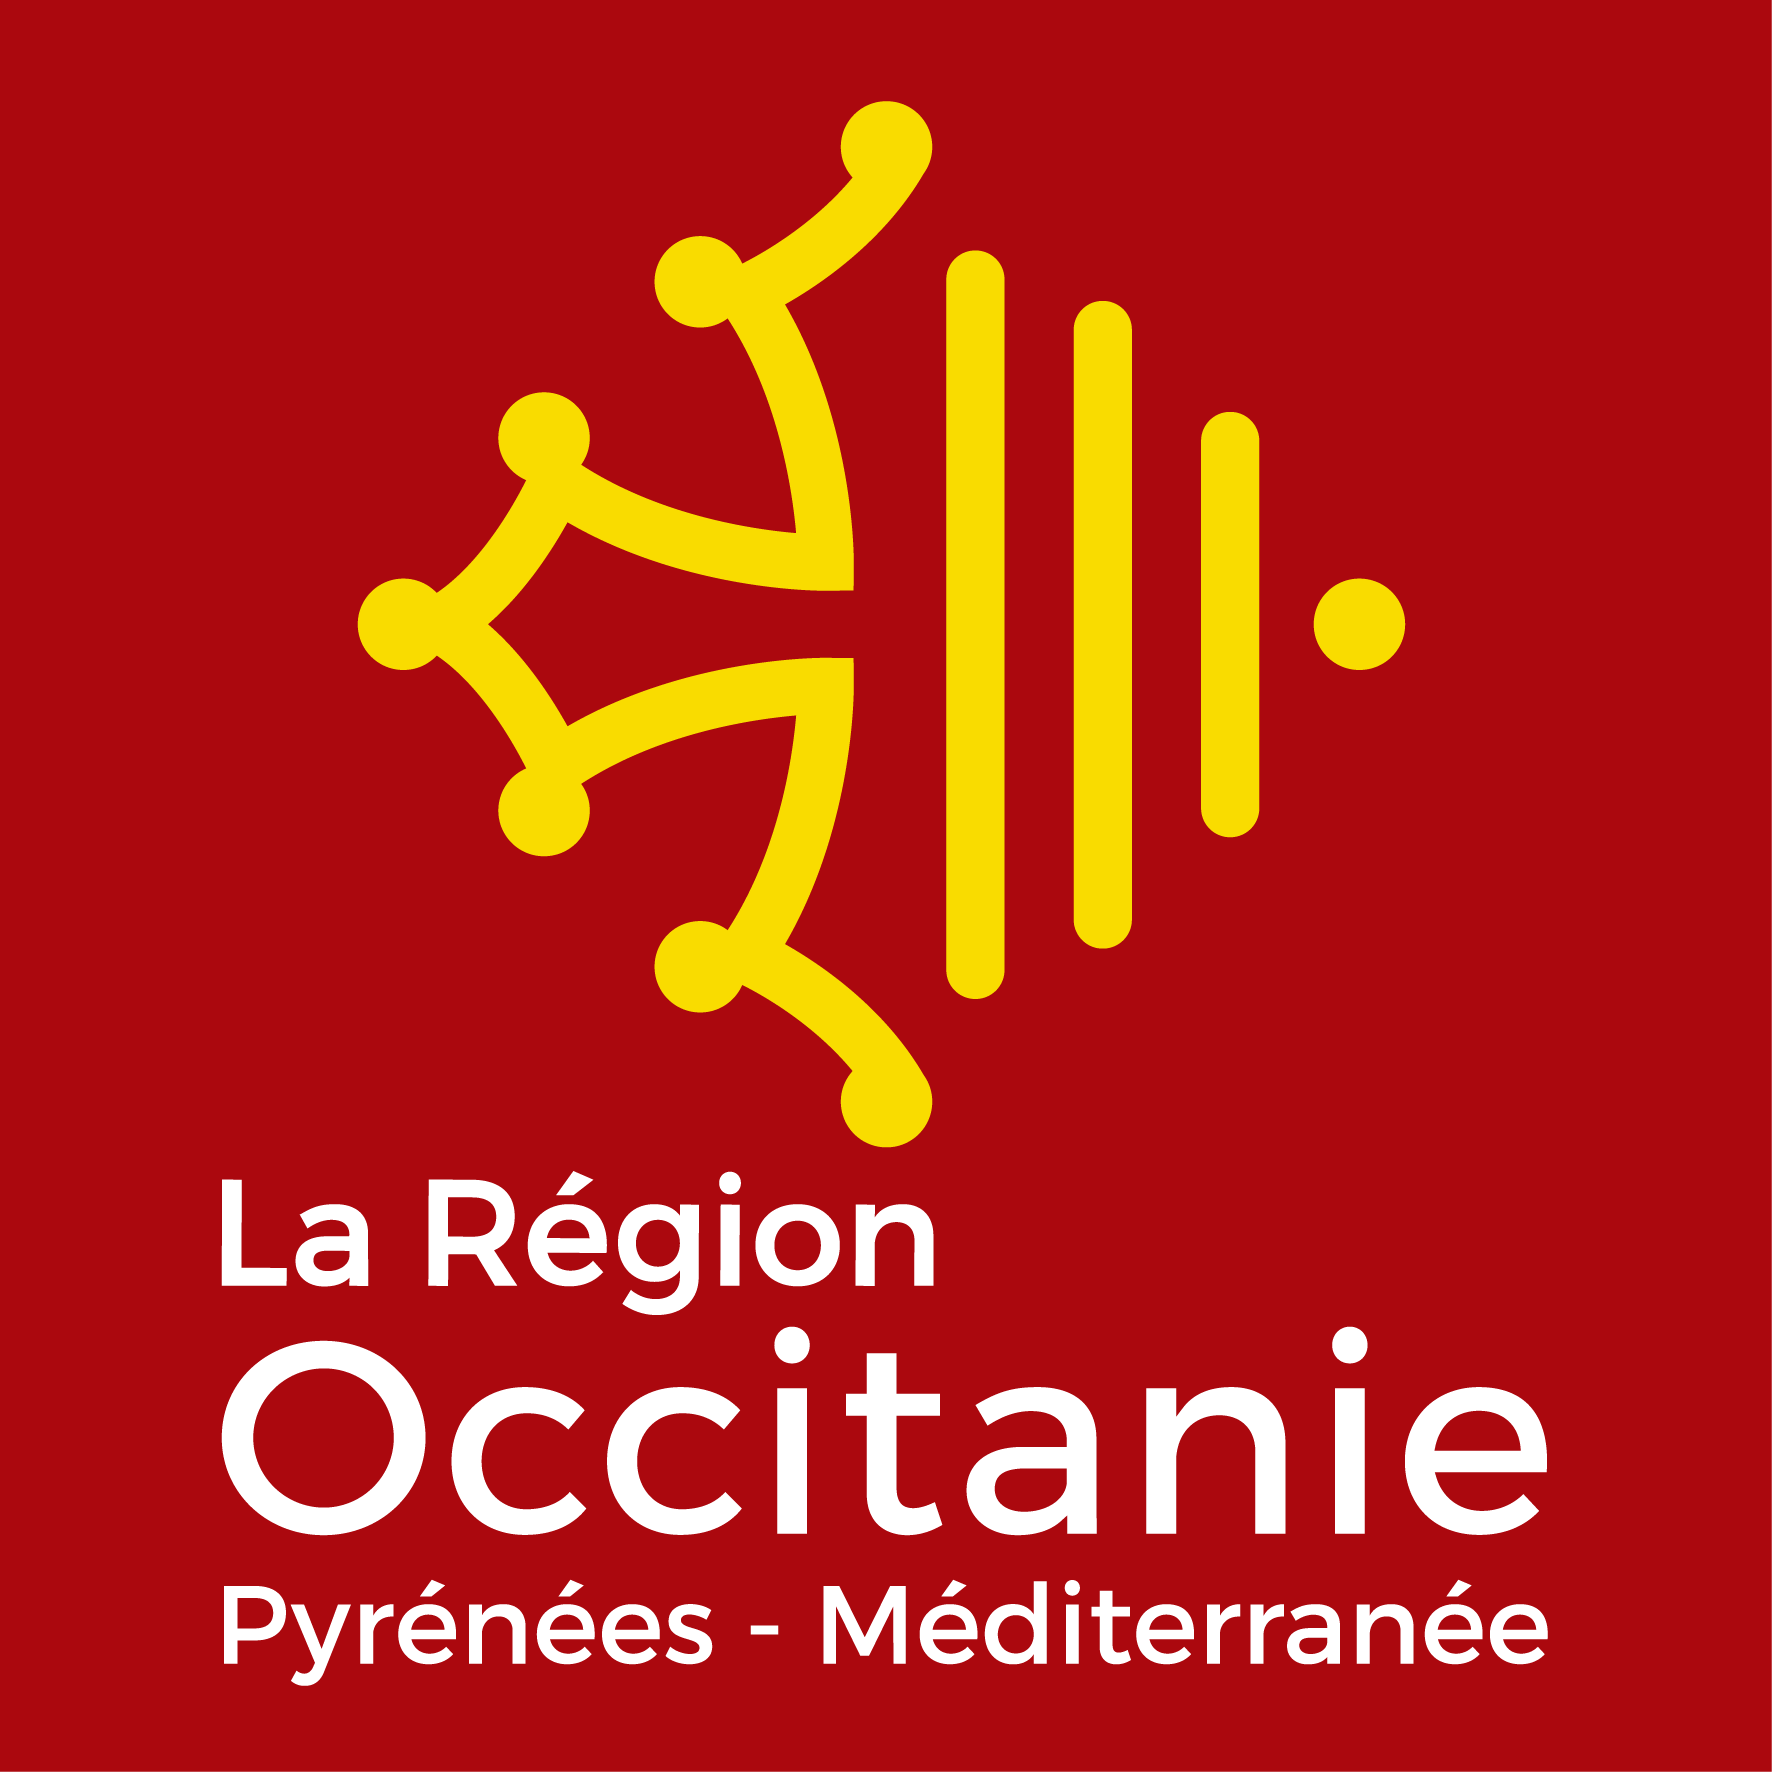 Politique régionale en Occitanie en faveur des festivals et des aides à la création pour les équipes artistiques